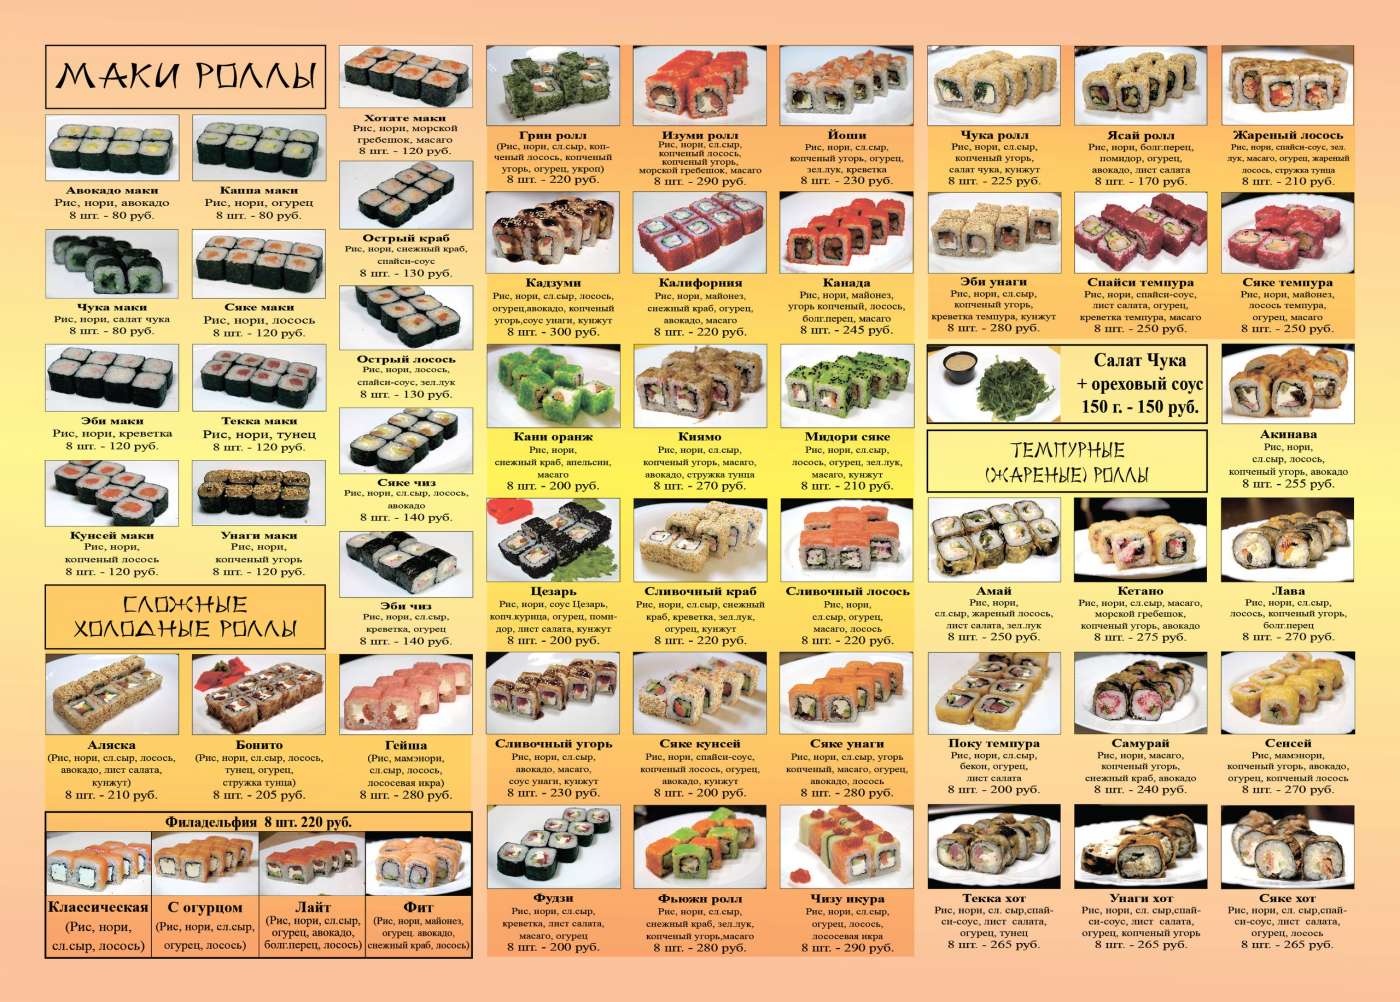 СушиРезко - доставка суши и роллов